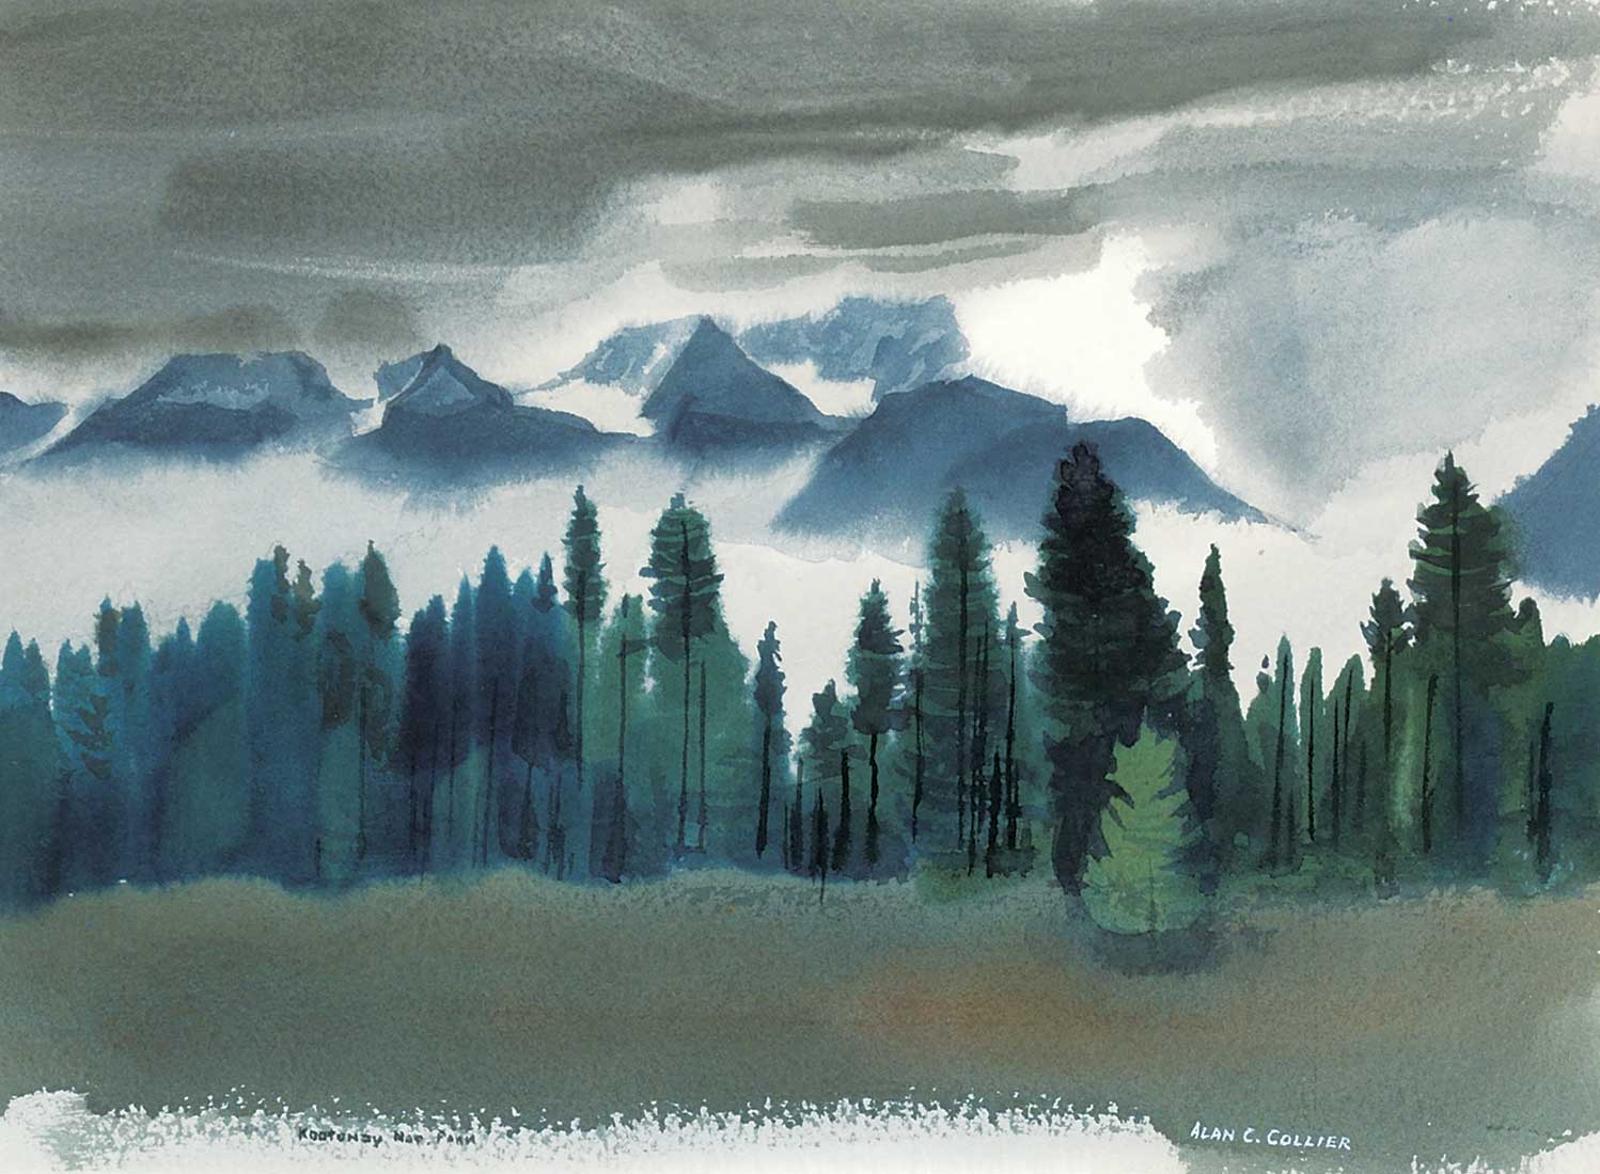 Alan Caswell Collier (1911-1990) - Rainy Day, Kootenay Nat. Park, B.C.